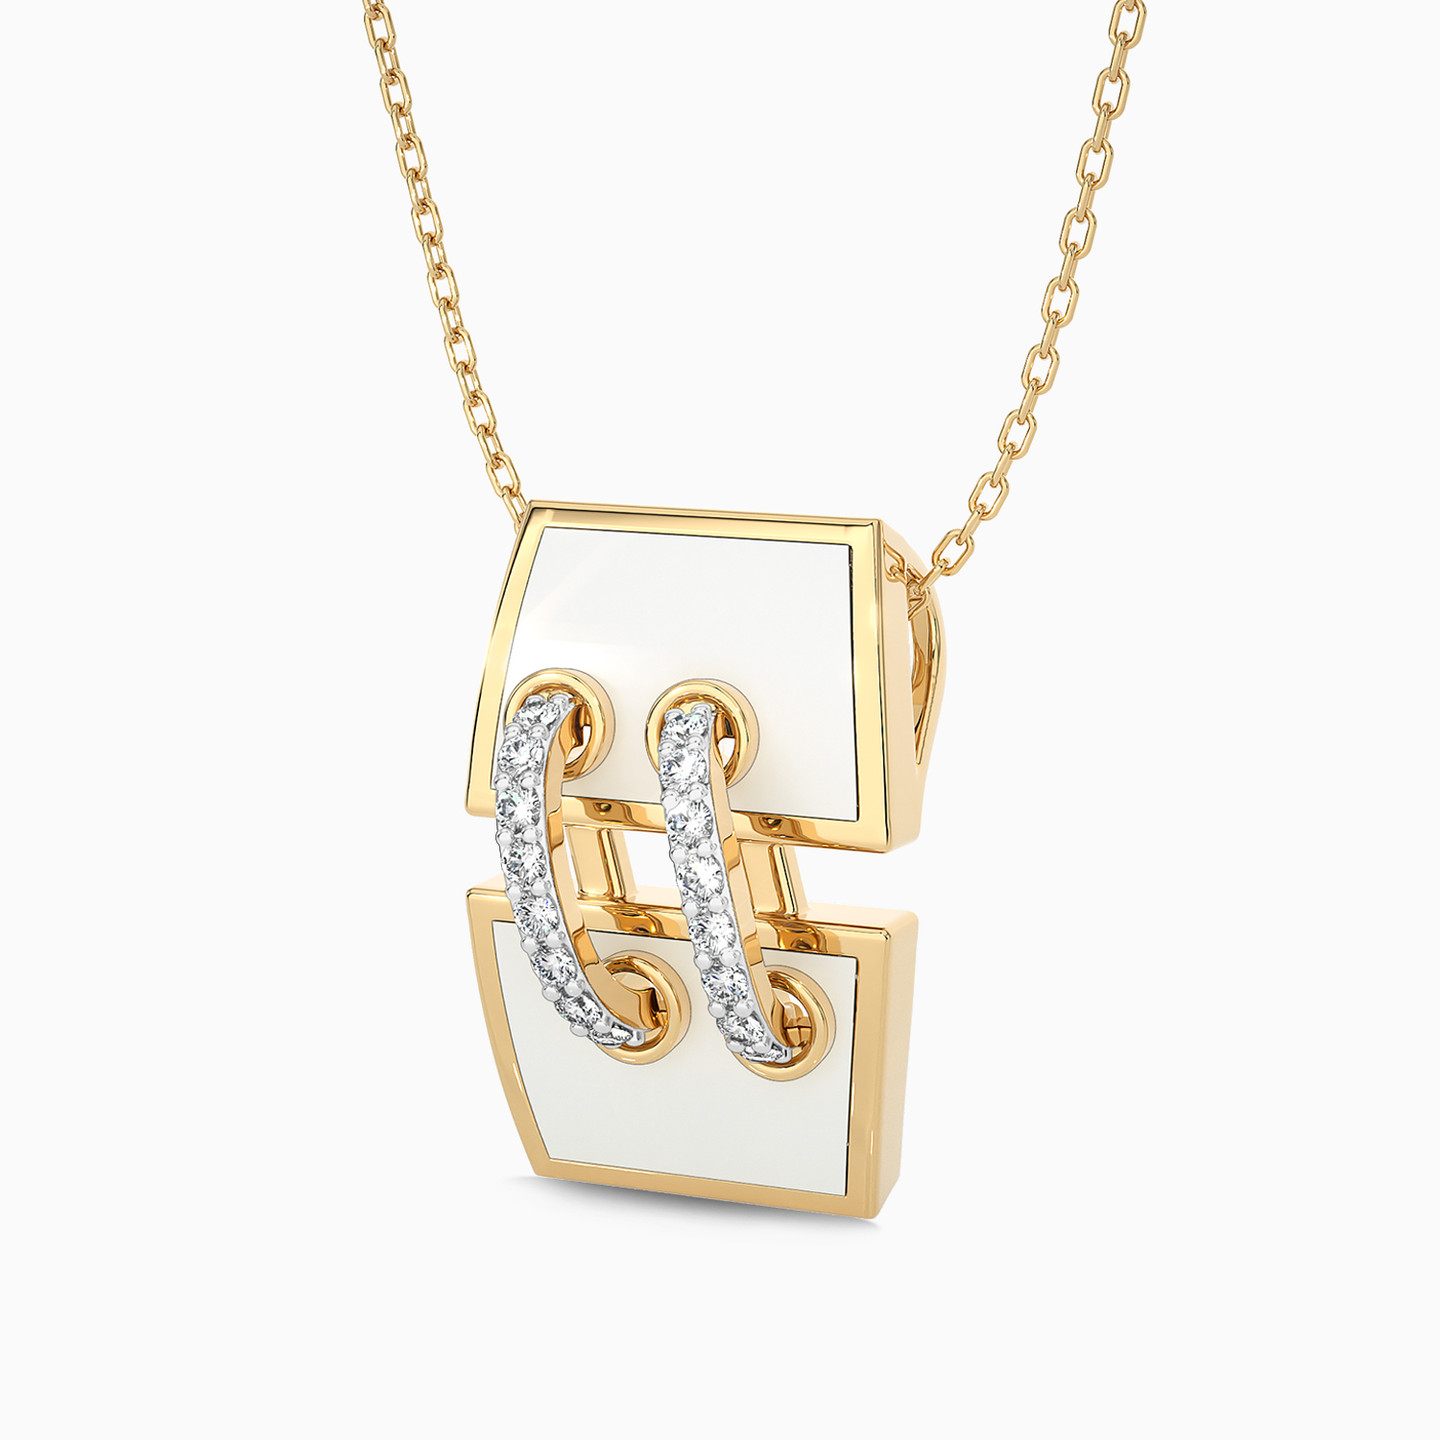 18K Gold Diamond & Enamel Coated Pendant Necklace - 3